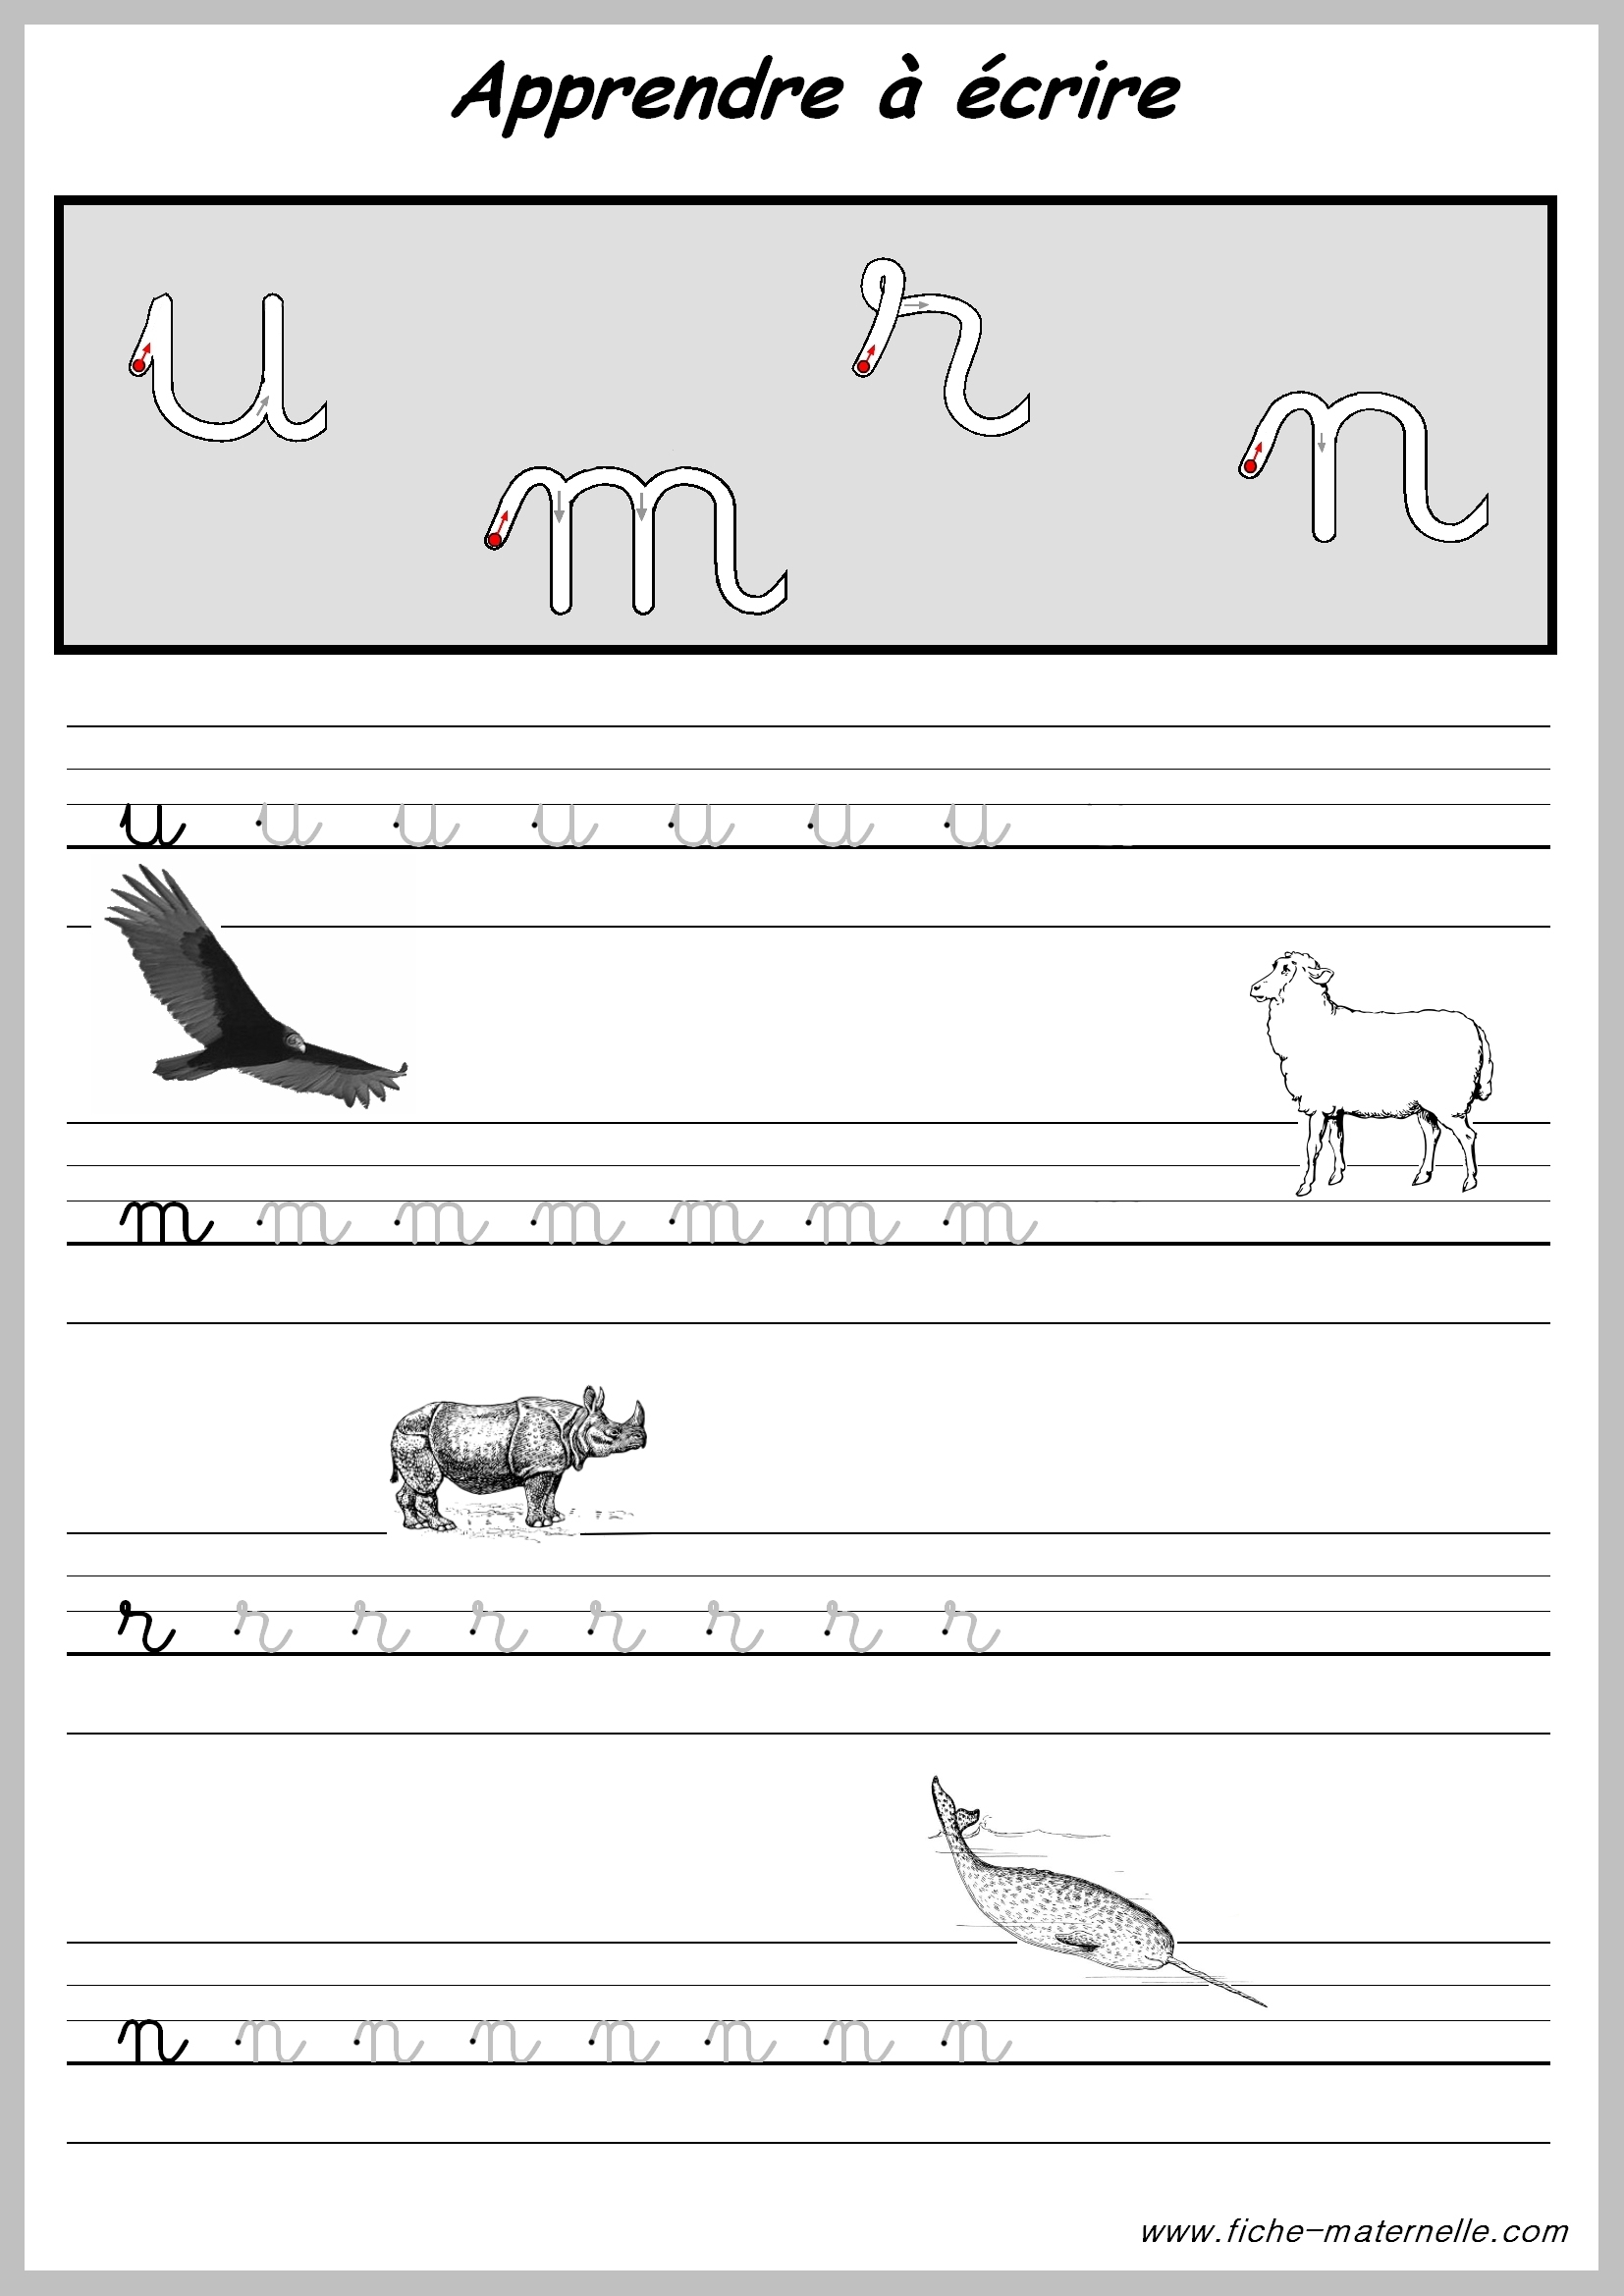 Apprendre A Écrire L Alphabet - Primanyc encequiconcerne Apprendre A Écrire L Alphabet